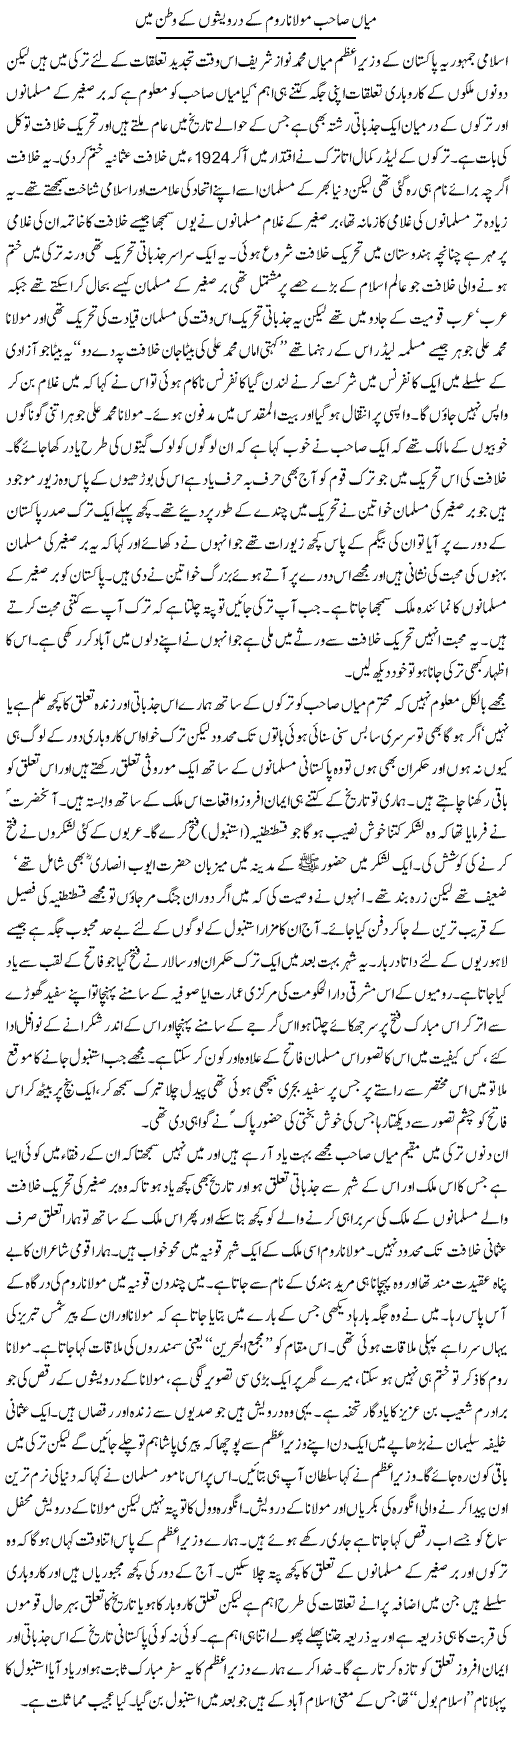 Mian Sahab Molana Room Kay Darwaisho Kay Watan Mai | Abdul Qadir Hassan | Daily Urdu Columns